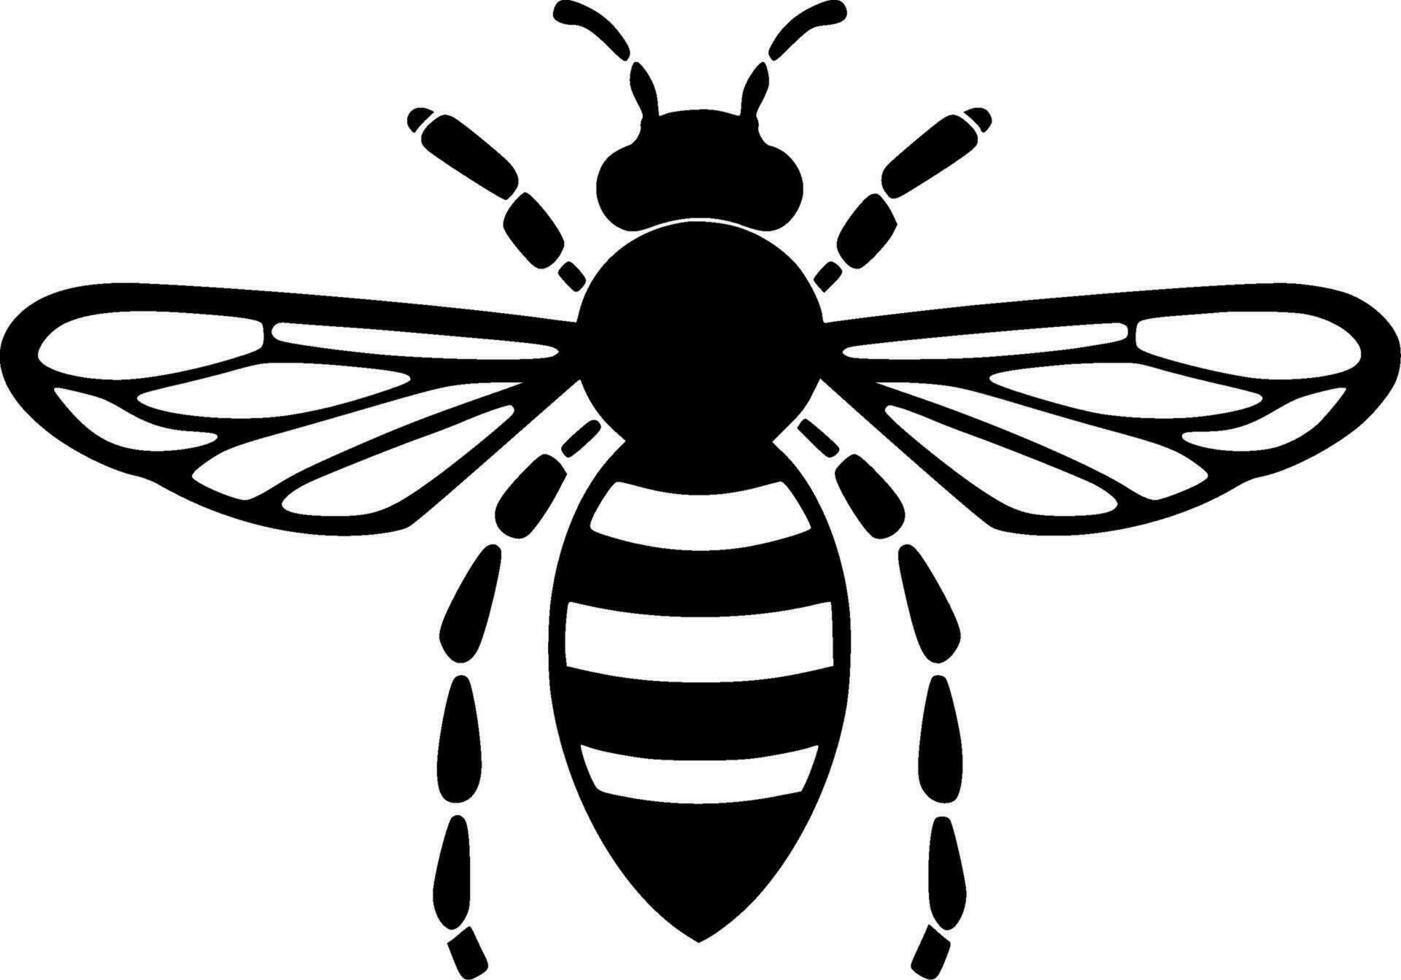 abelha, Preto e branco vetor ilustração